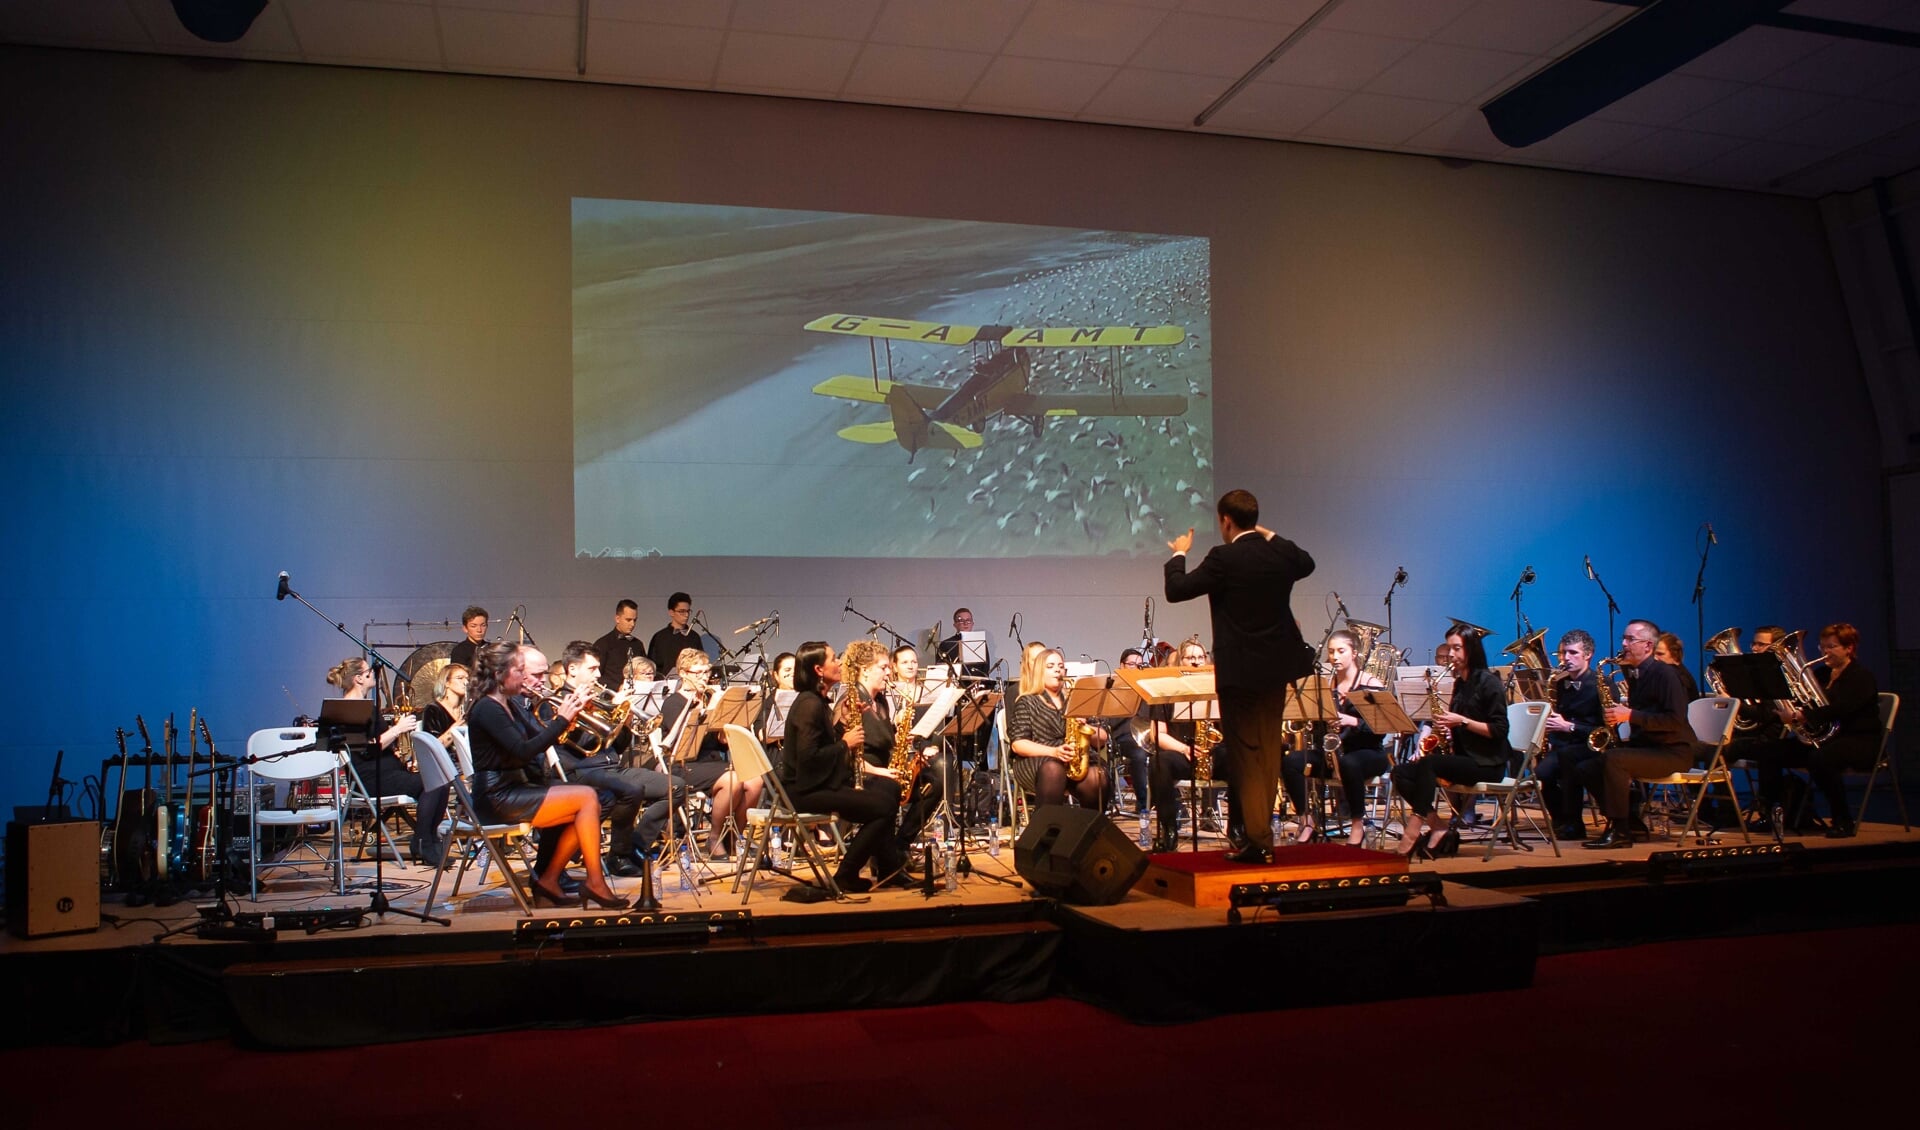 MFC de Biezen in Putte vormt zaterdag het decor voor optredens van de Woensdrechtse muziekverenigingen.